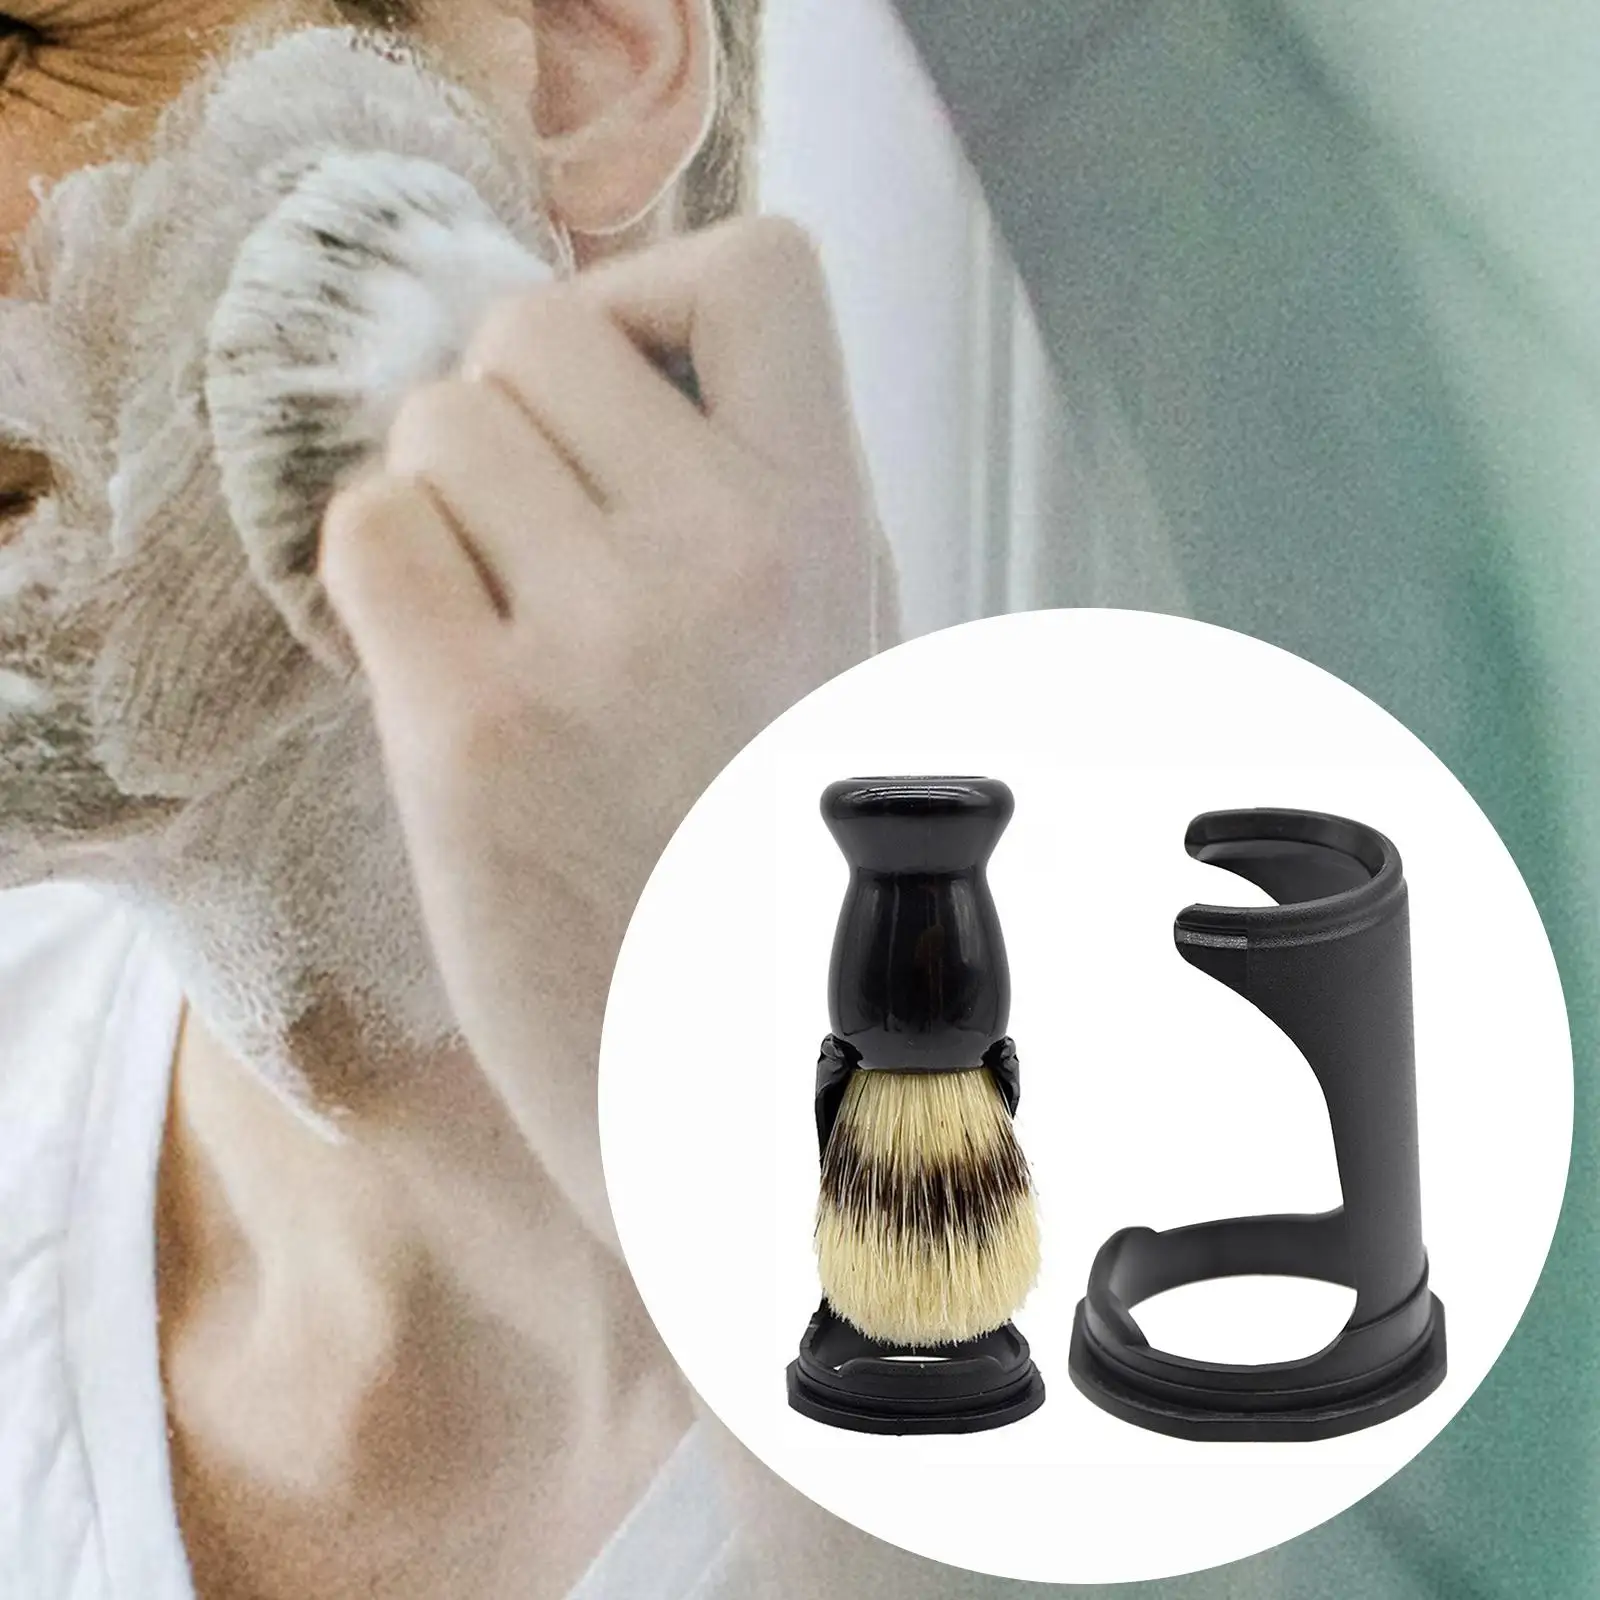 2-4pack Brush Shaving Holder Shaver Holder for Bathroom Salon Extra